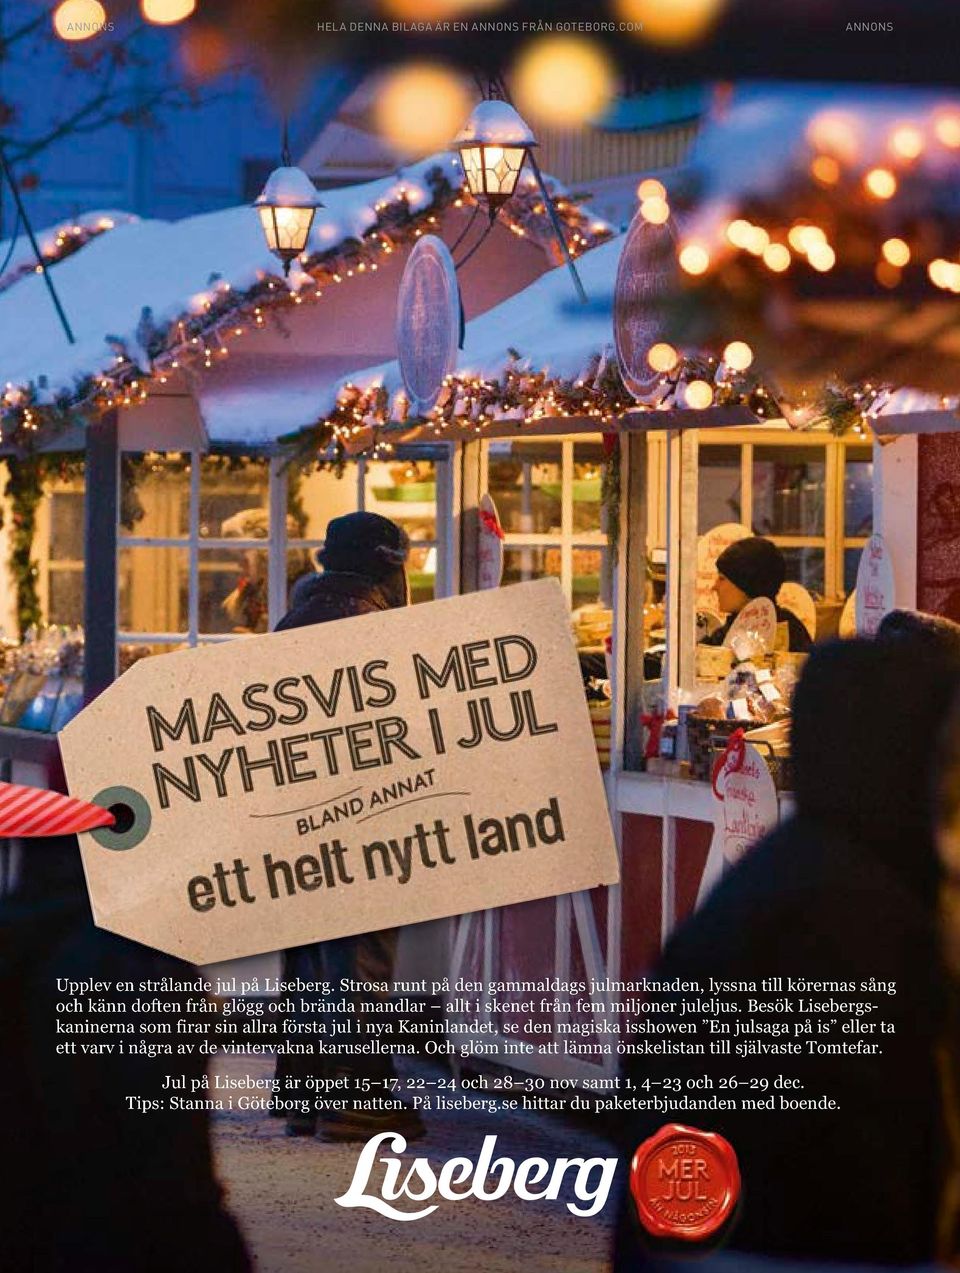 Besök Lisebergskaninerna som firar sin allra första jul i nya Kaninlandet, se den magiska isshowen En julsaga på is eller ta ett varv i några av de vintervakna